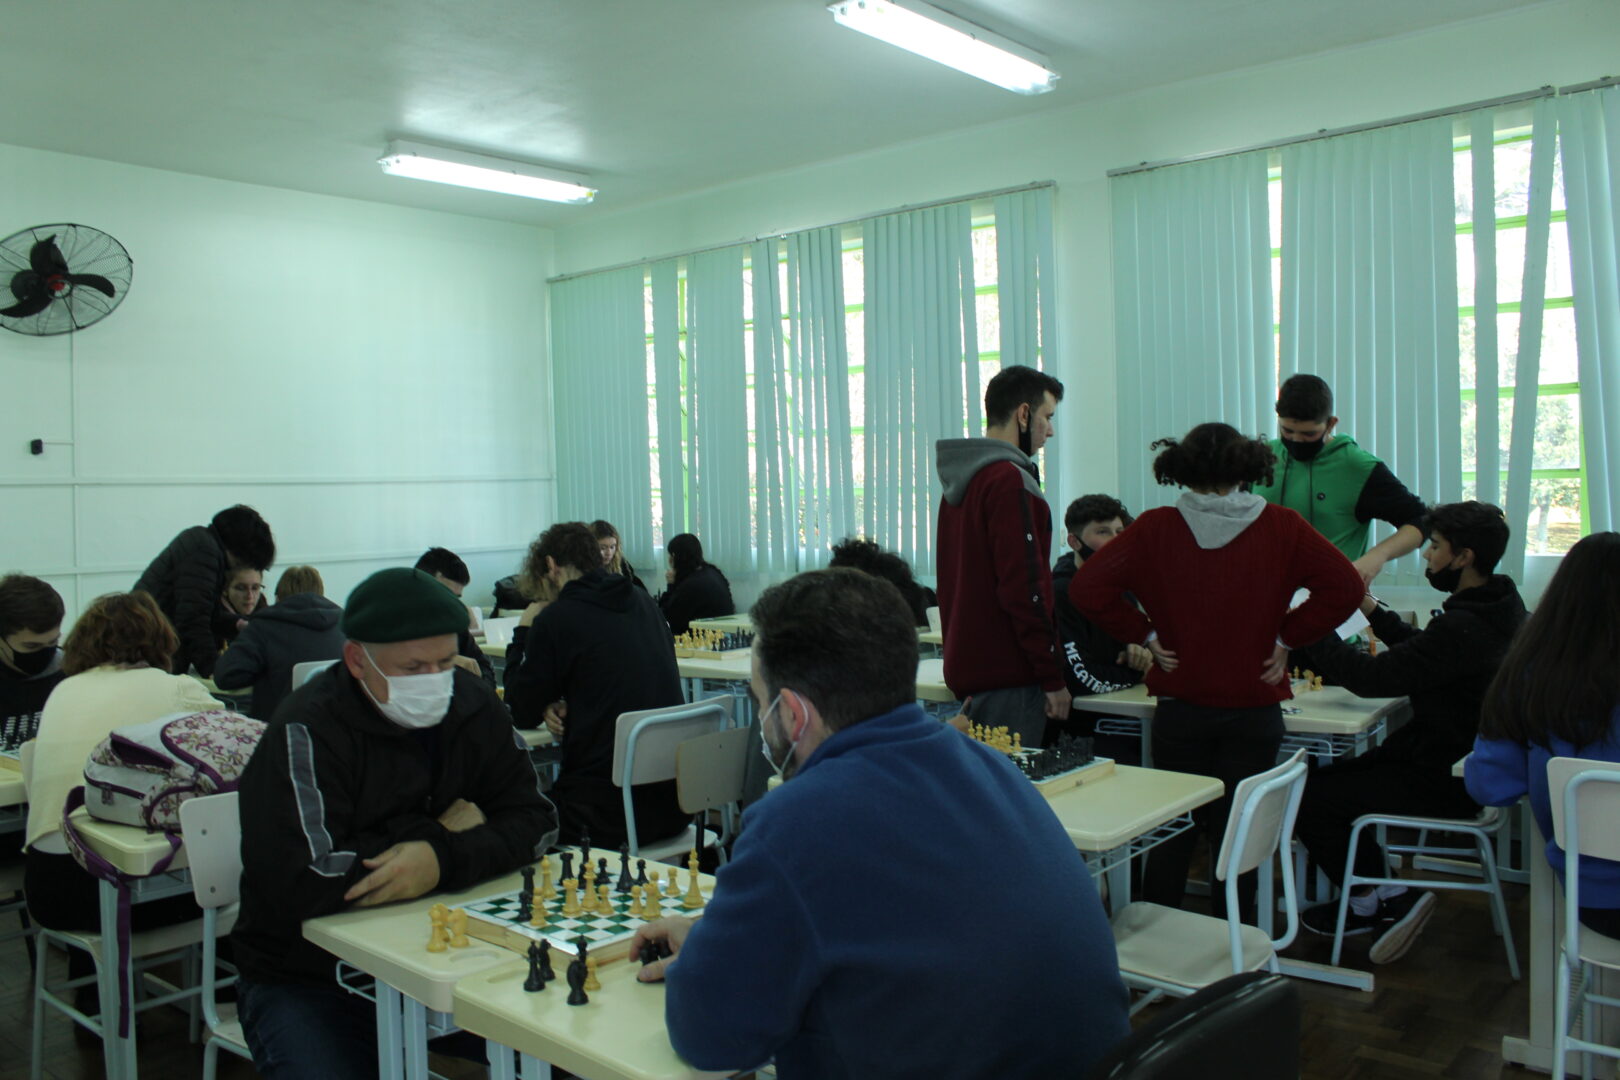 2ª oficina de xadrez para iniciantes será ofertada pelo projeto “Jogos de  Tabuleiro: Ludicidade e Recreação com a comunidade do Alto Uruguai Gaúcho”  - Campus Erechim